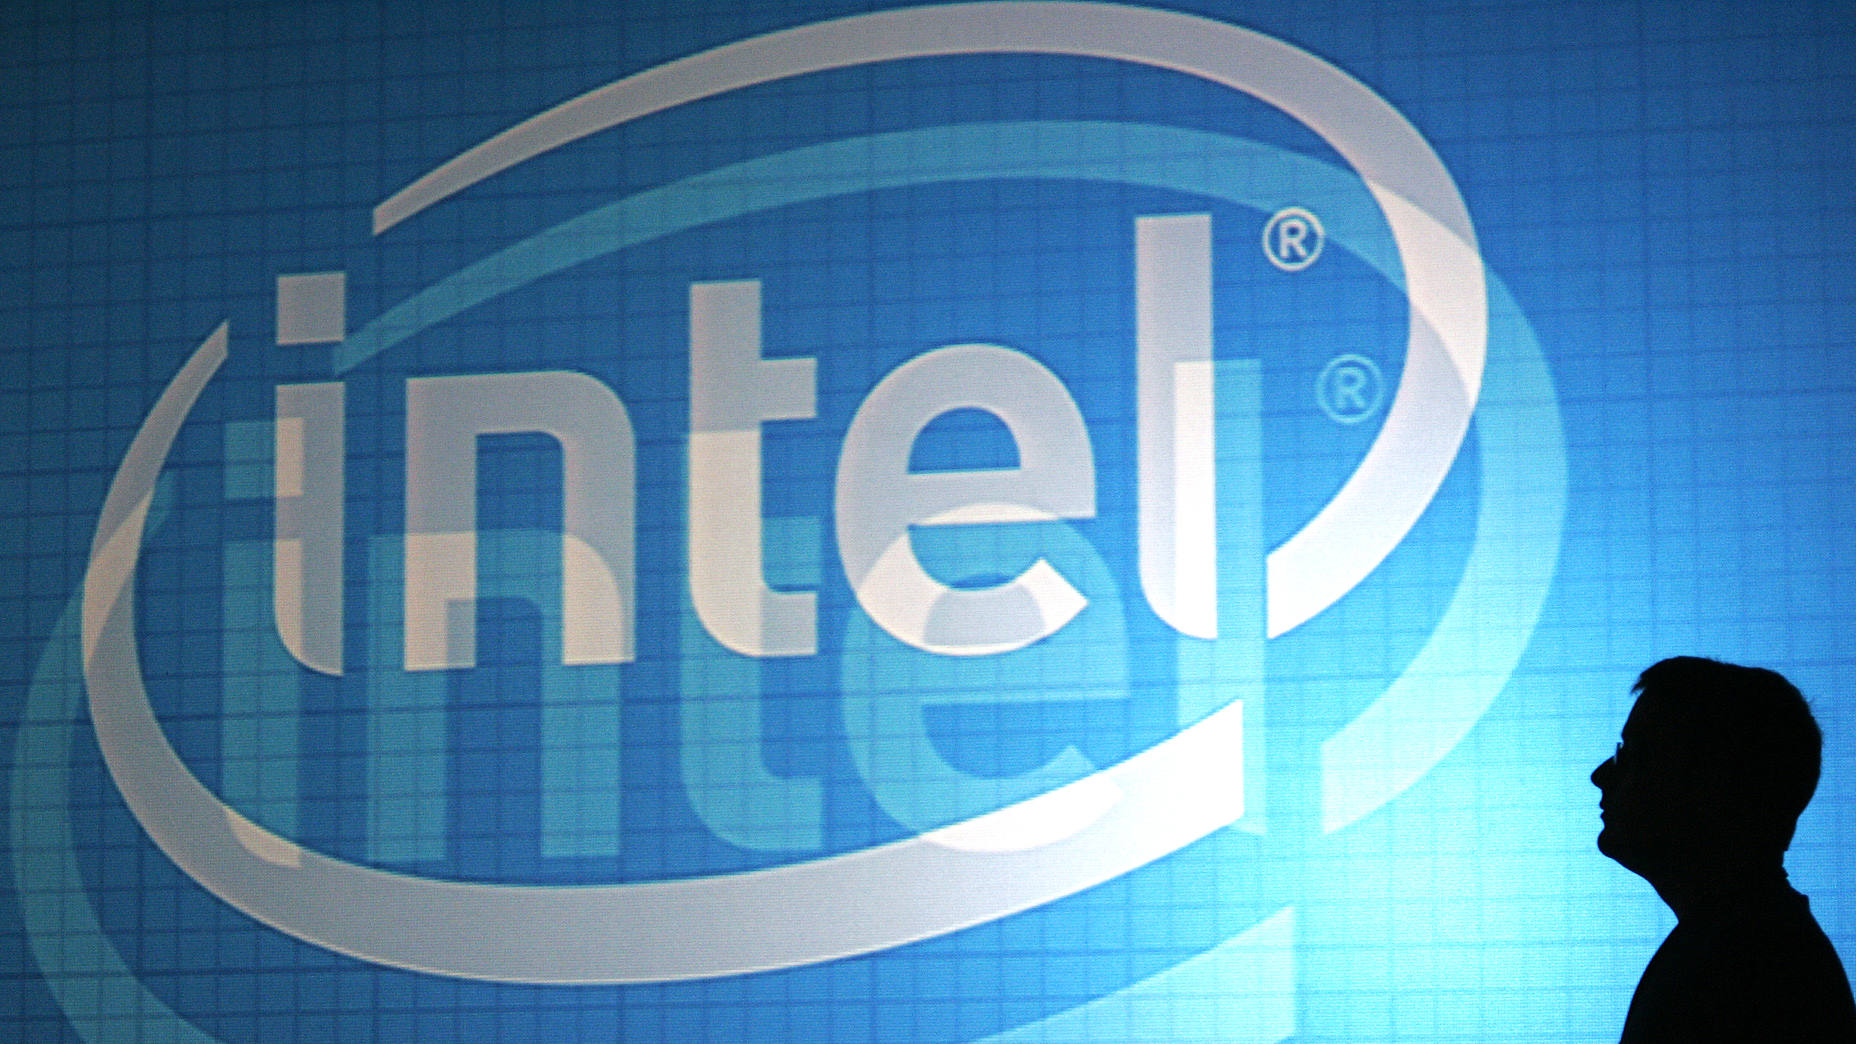 صورة معالج Intel Core i9-10980HK يستهلك أكثر من Ryzen 9 3950X في أجهزة اللاب توب!